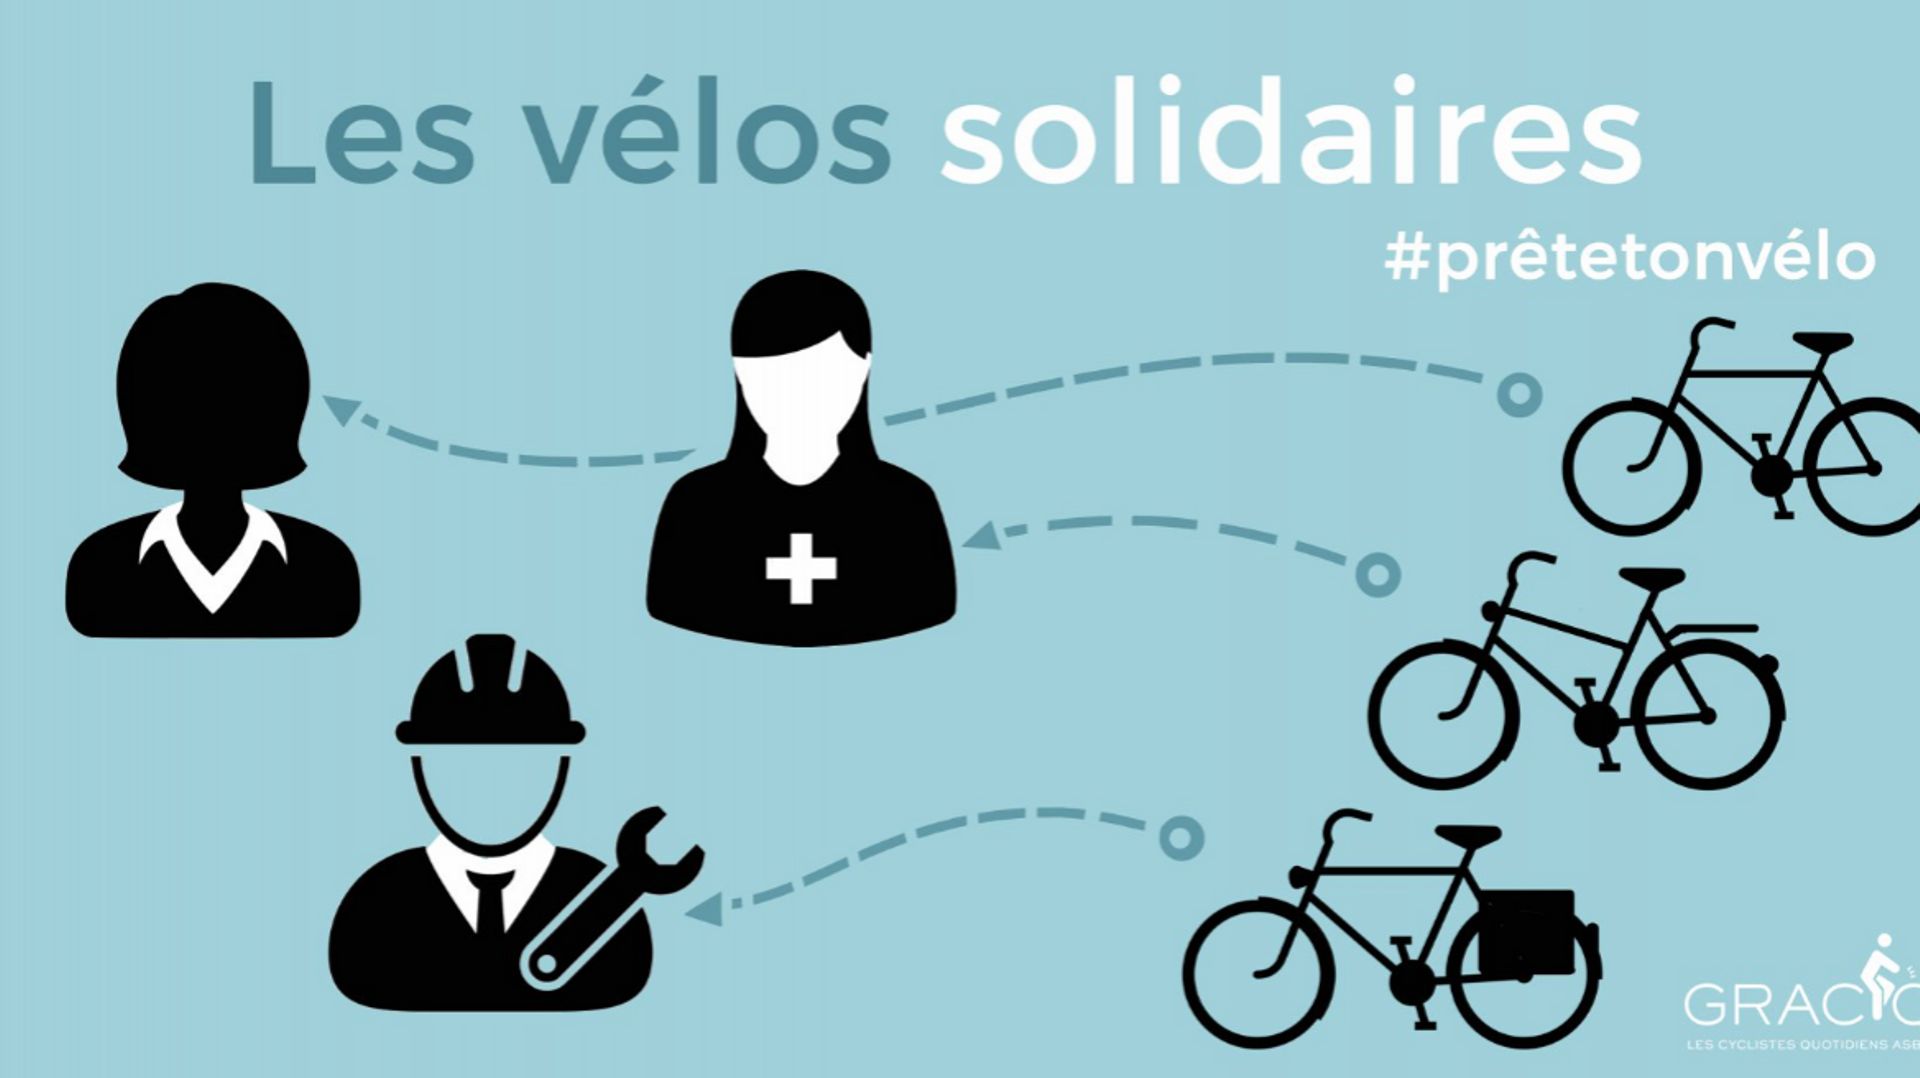 Coronavirus: le Gracq lance une initiative solidaire de prêt de vélos entre citoyens